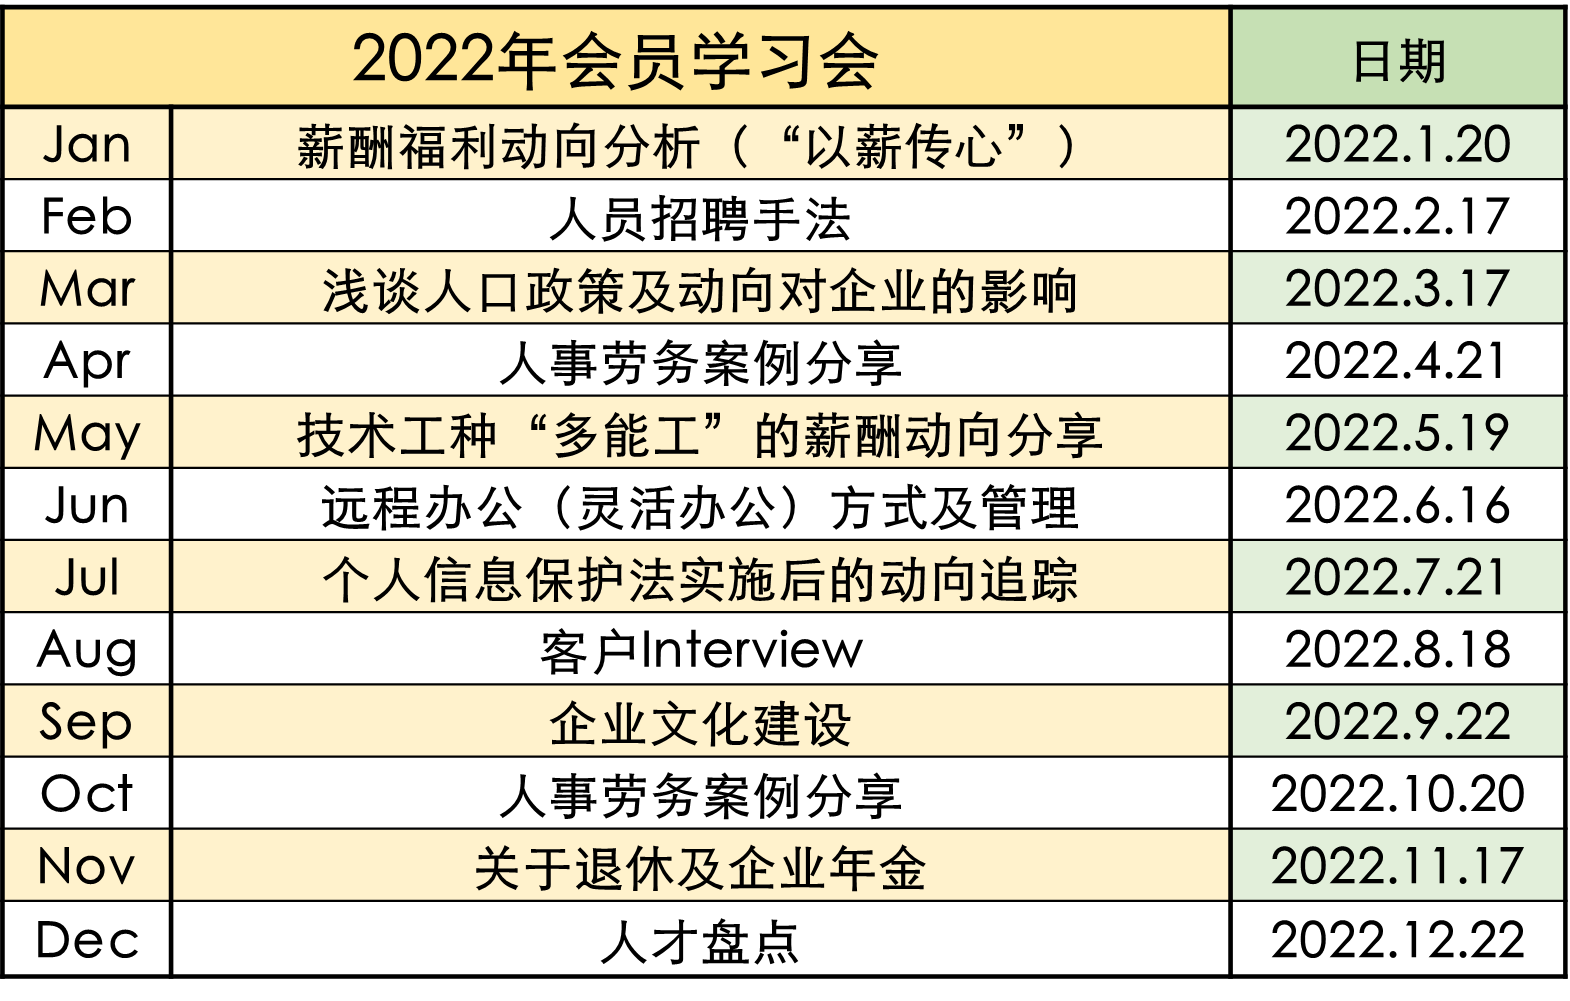 2022年度会员学习会日程表